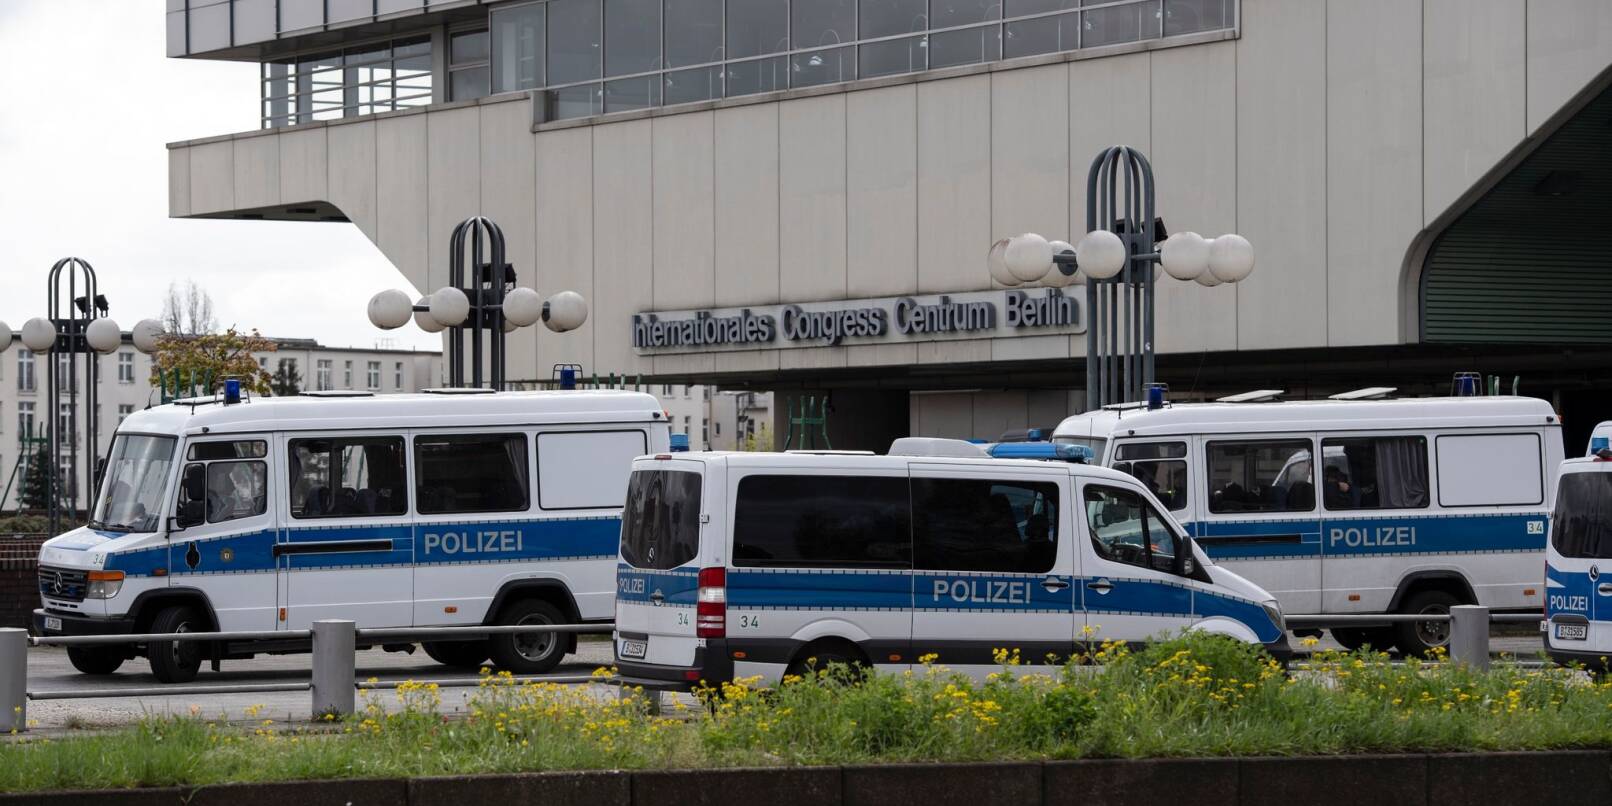 Einsatzfahrzeuge der Polizei stehen am ehemaligen Kongresszentrum ICC in Berlin.